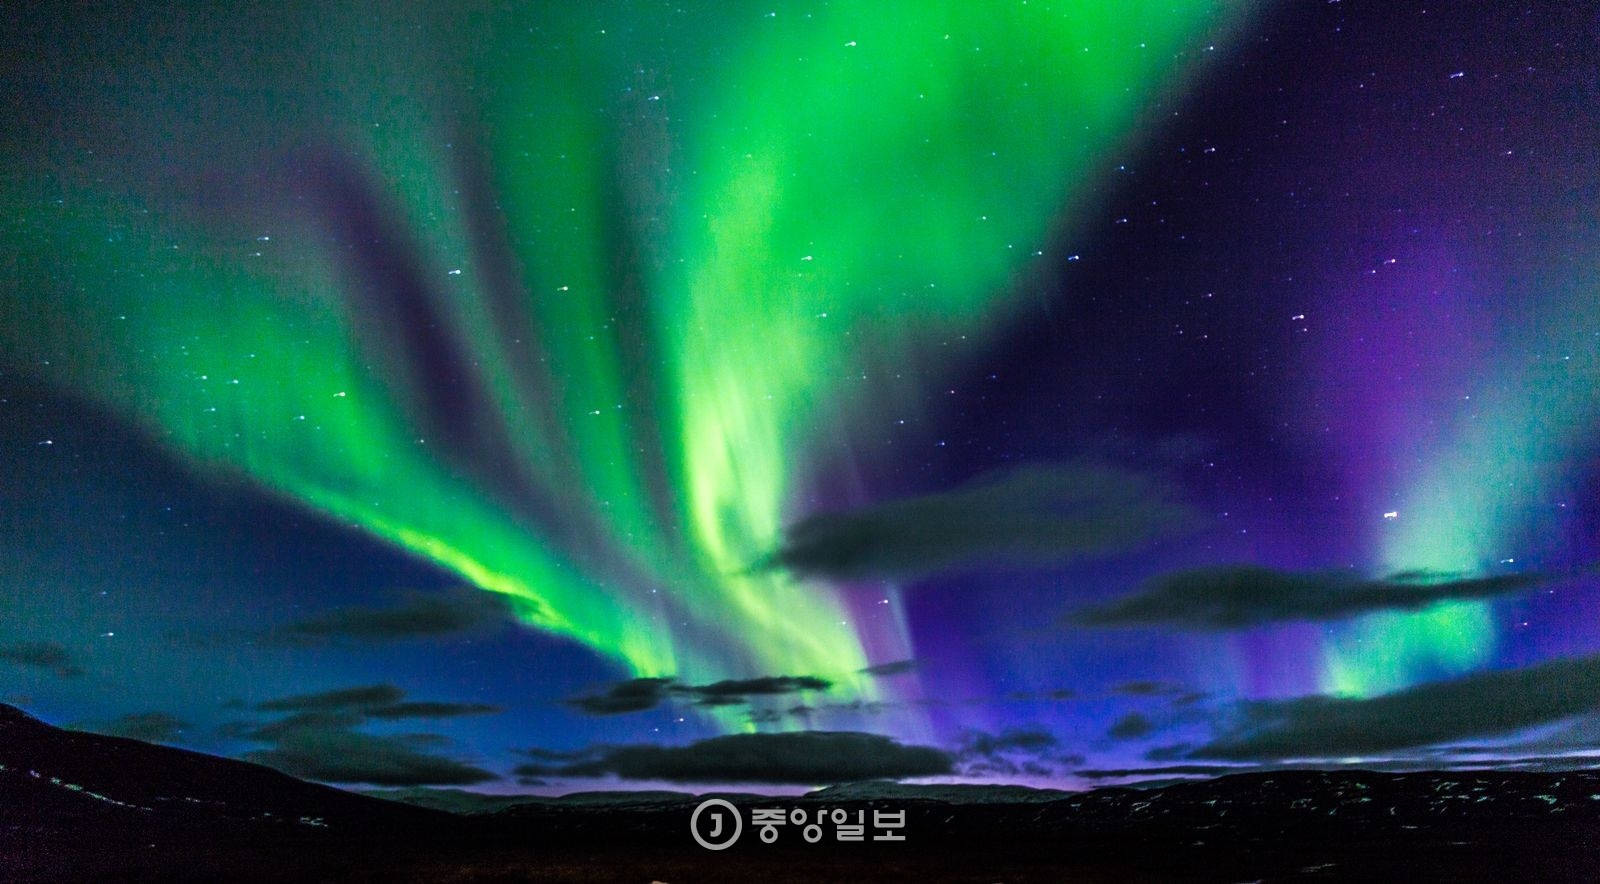 겨울밤에 볼 수 있는 아이슬란드의 오로라. 하늘이 너울대며 춤추는 모습이 신비롭다. 옛 사람들은 오로라를 ‘신의 영혼’ 혹은 ‘신의 계시’라고 일컬었다